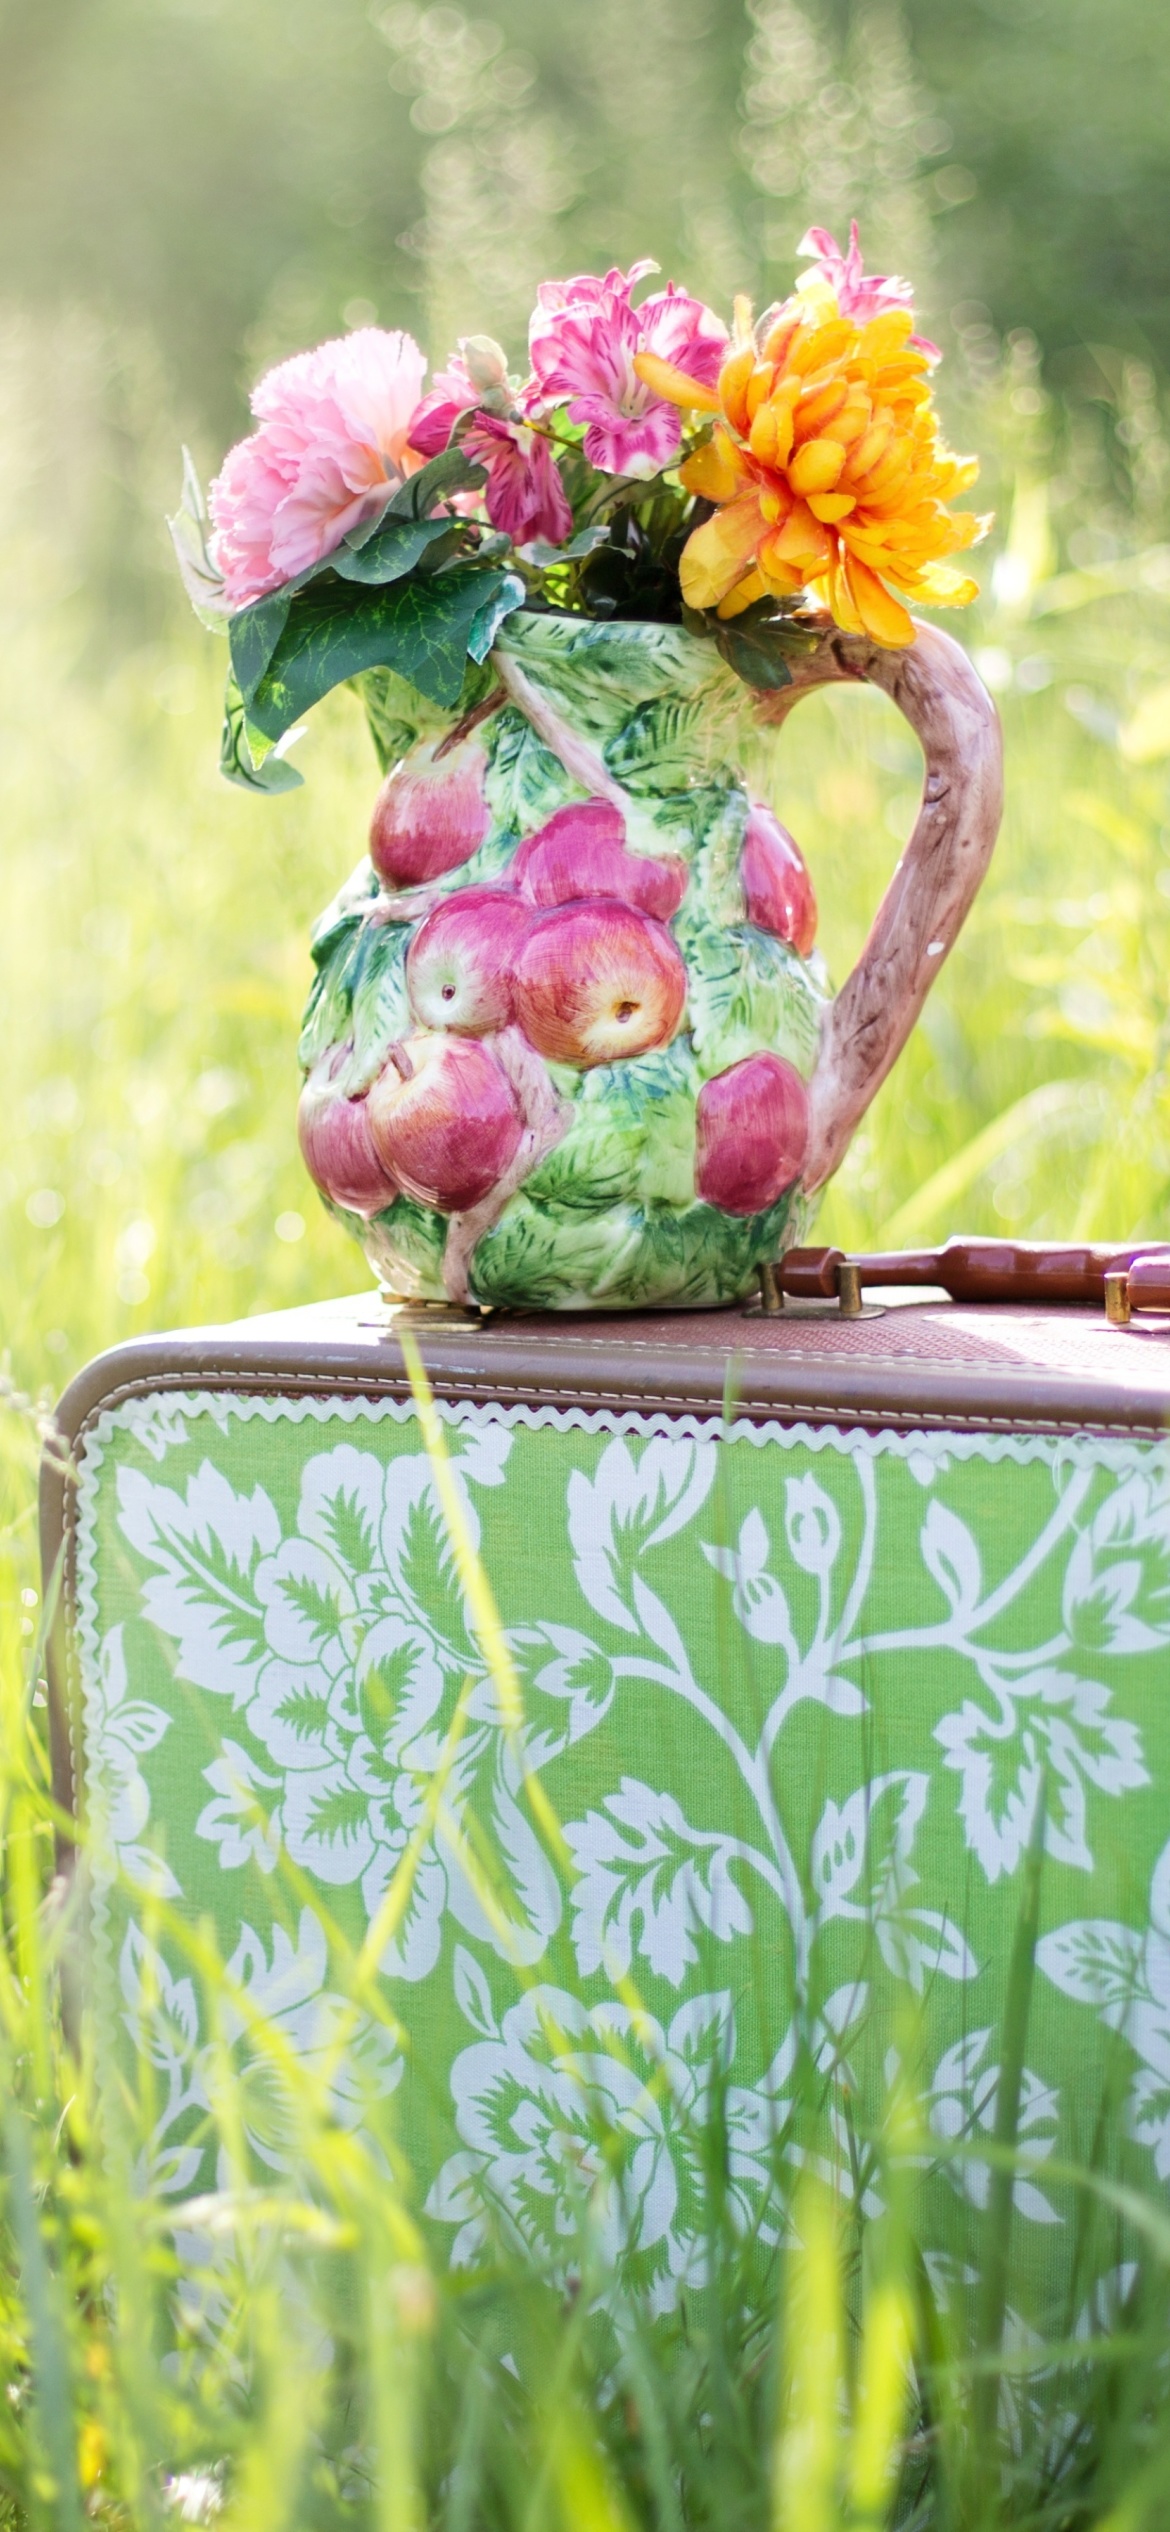 Обои Bouquet in Creative Vase 1170x2532